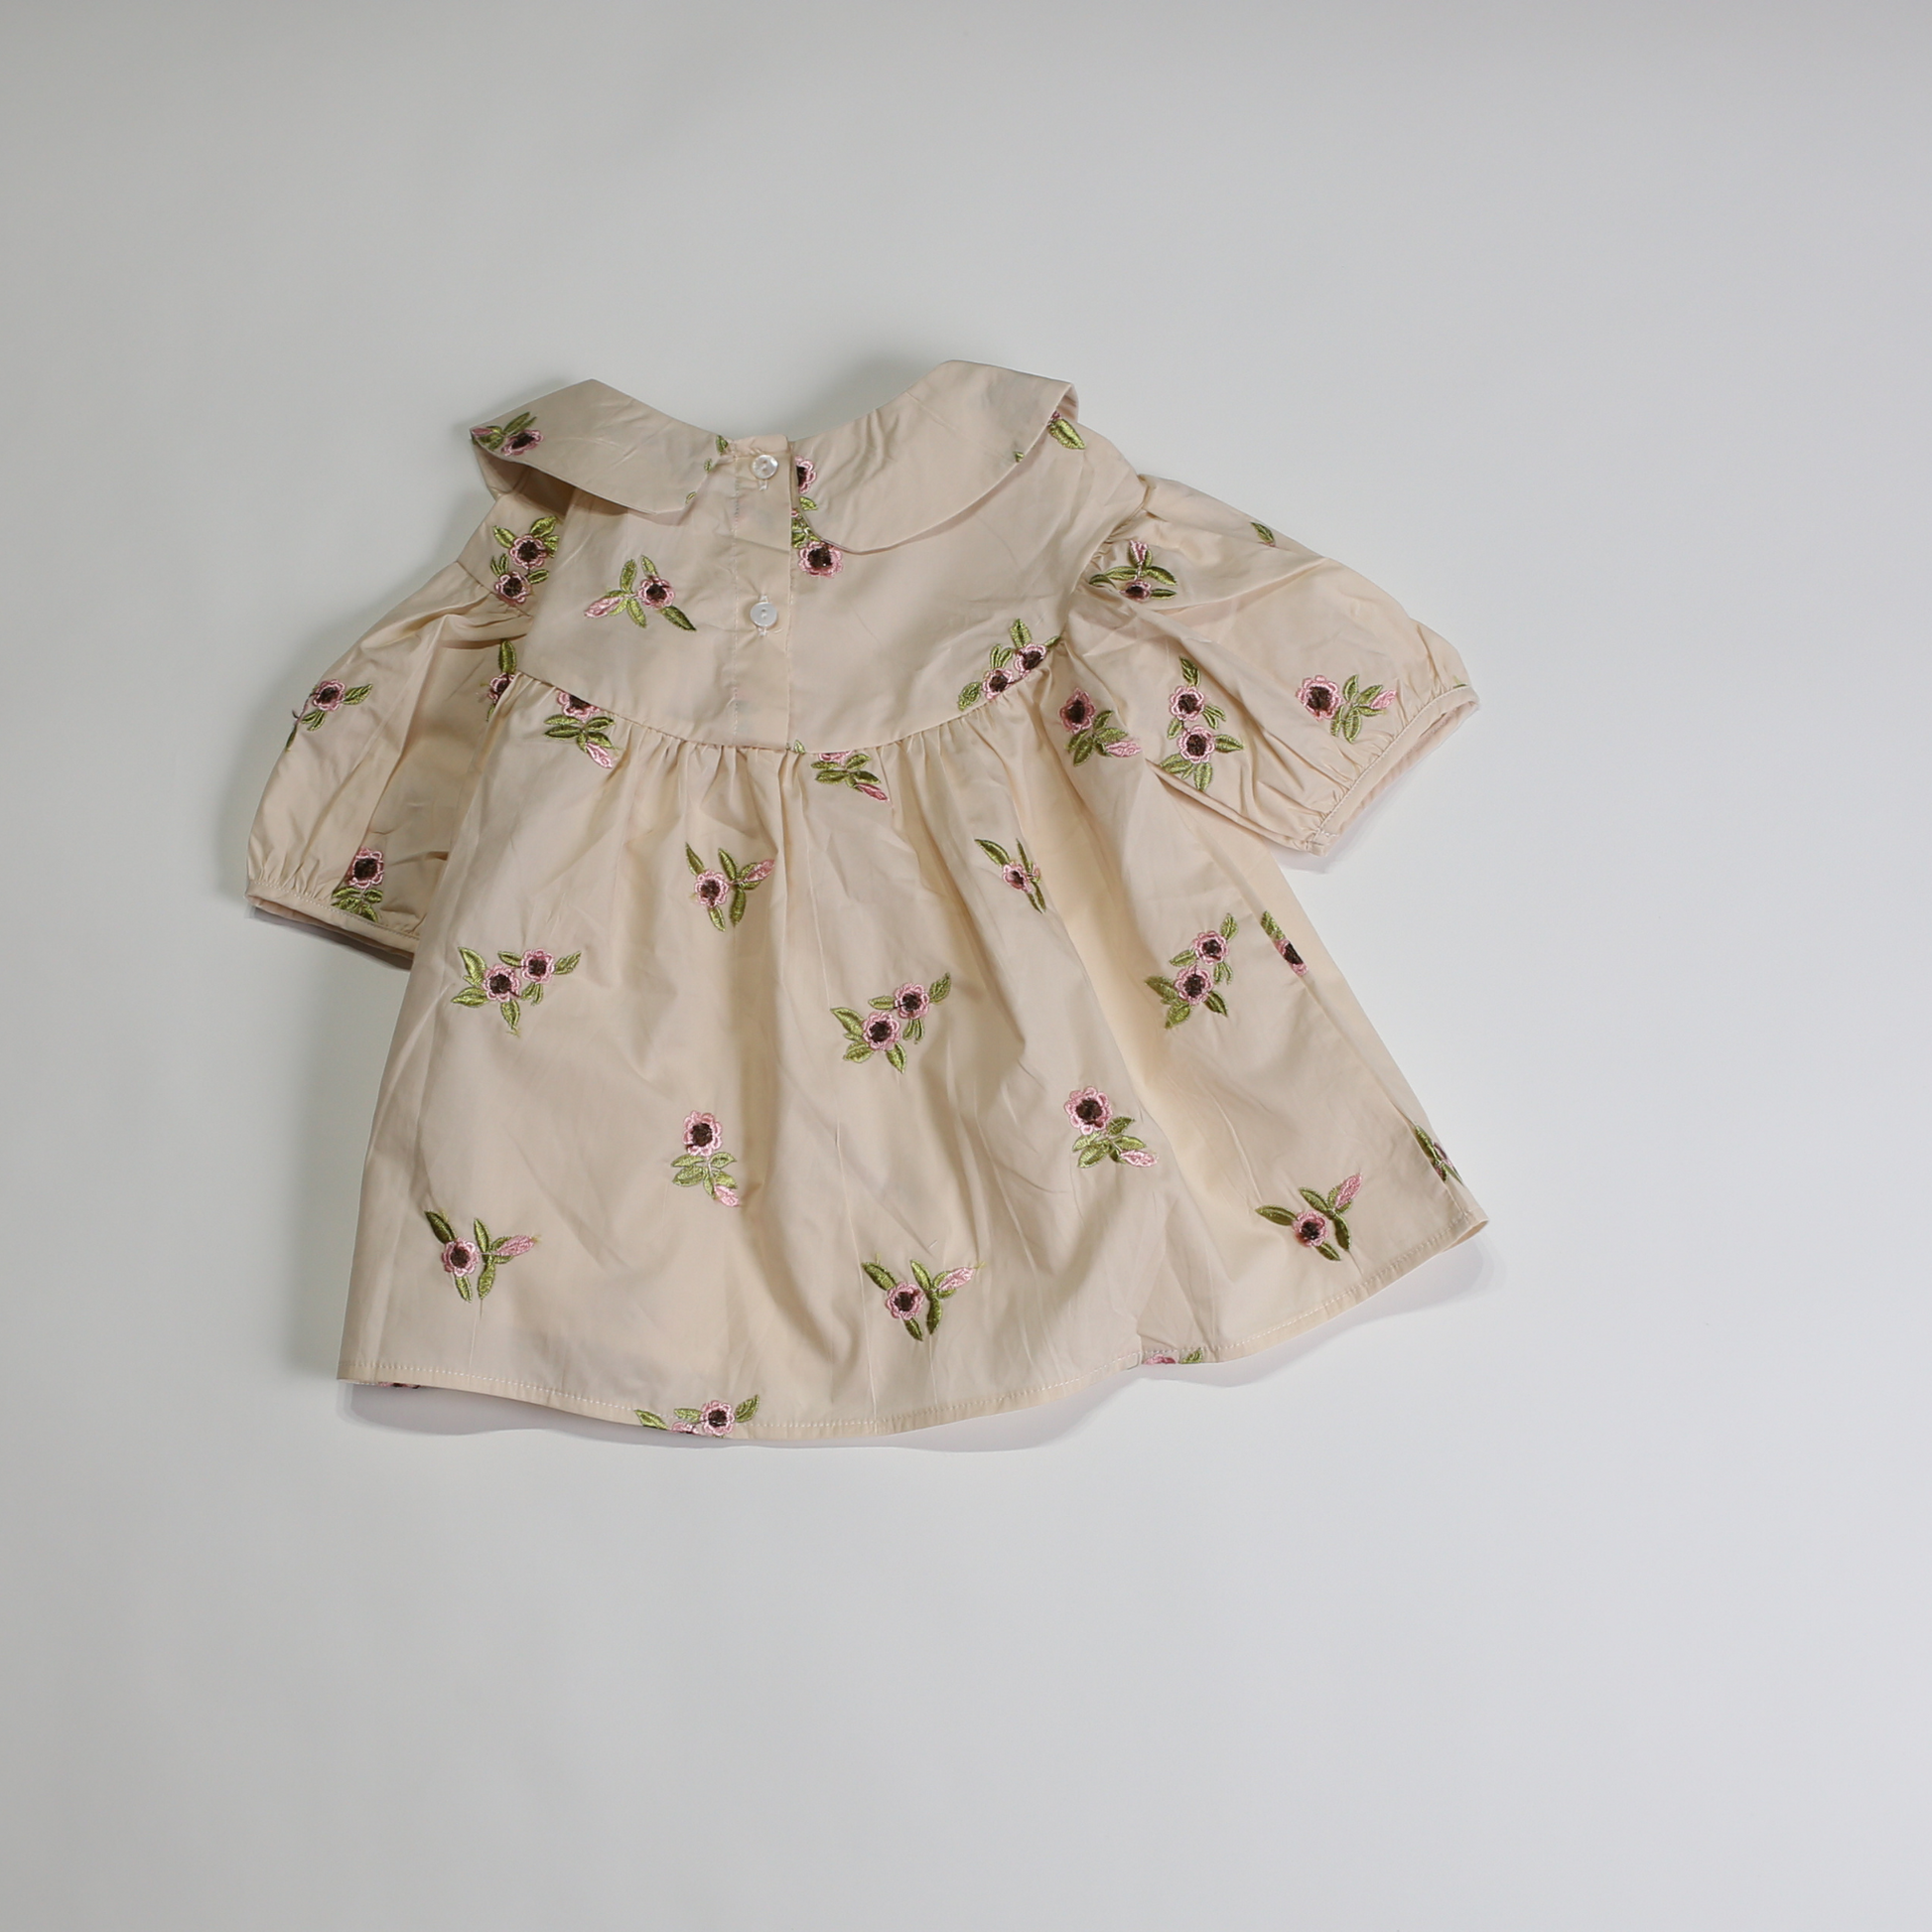 ミニフラワー ショートスリーブ ブラウス / mini flower short sleeve blouse (こども服) - kids clothes shop GUZUGUZU